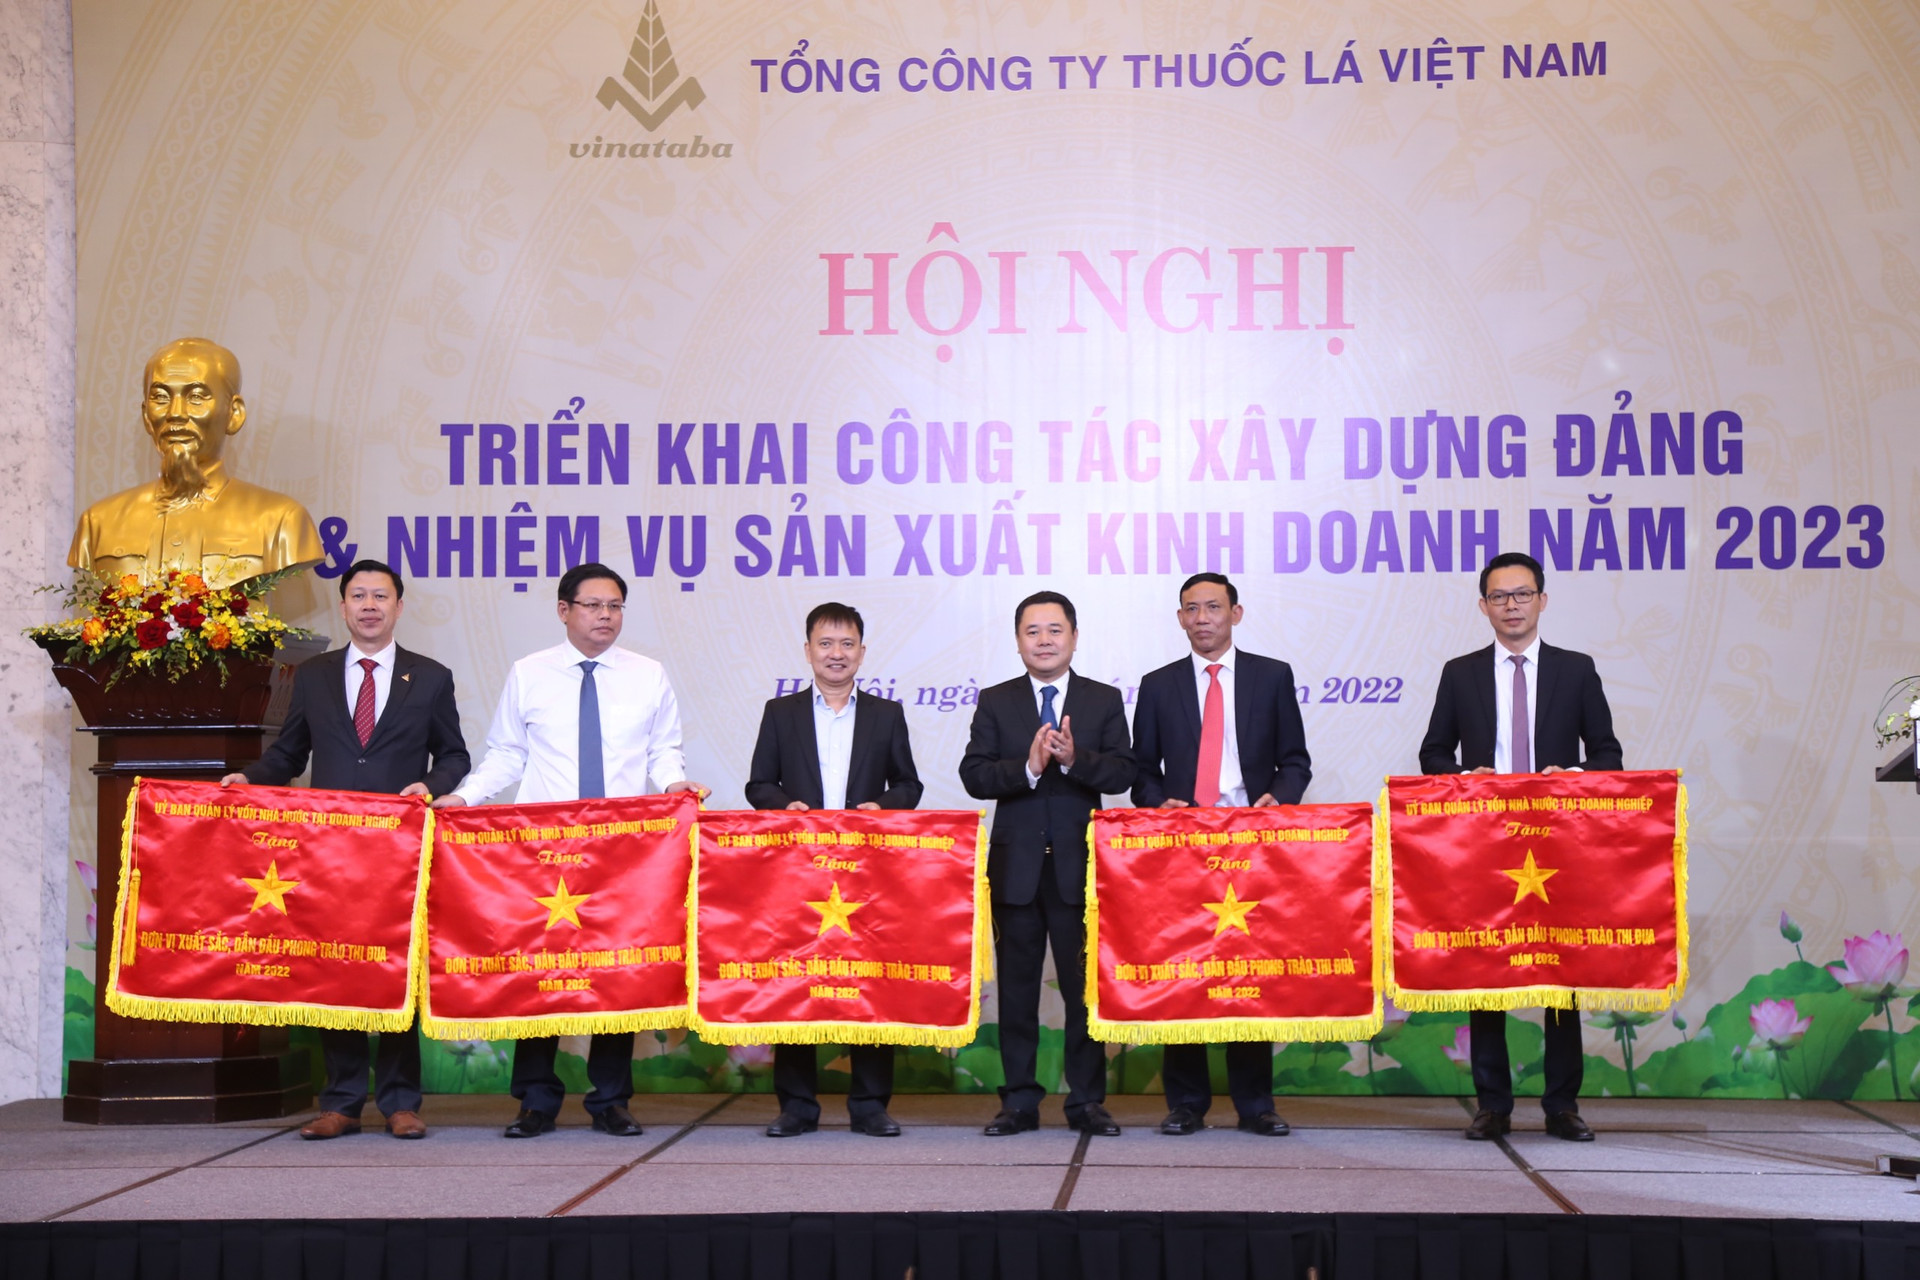 Phó Chủ tịch Ủy ban Quản lý vốn nhà nước tại doanh nghiệp Nguyễn Ngọc Cảnh trao Cờ thi đua của Ủy ban cho các đơn vị xuất sắc, dẫn đầu phong trào thi đua năm 2022 của Vinataba.